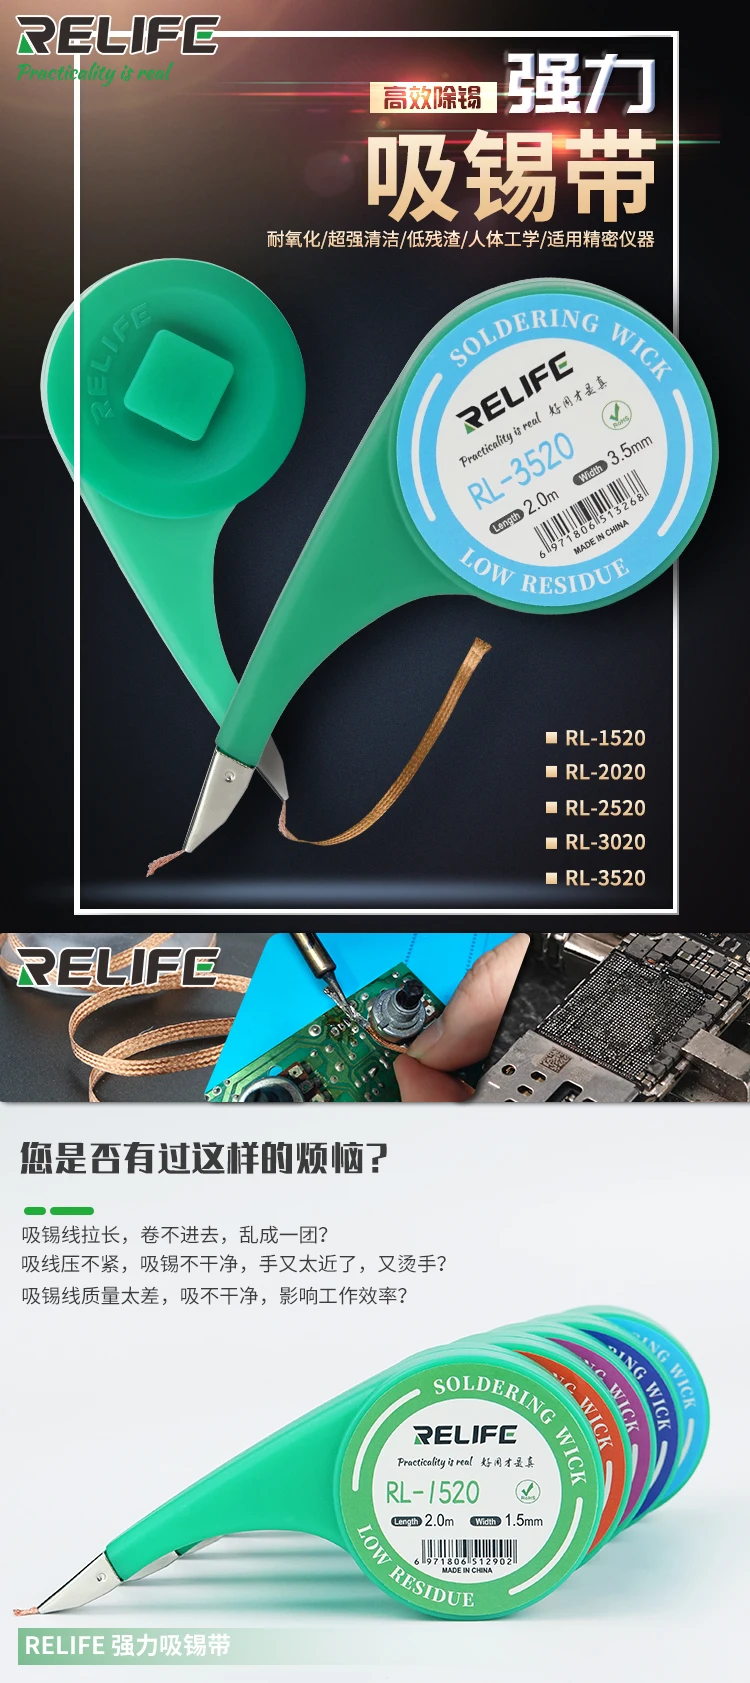 RELIFE RL-1520  powerful solder  wick for mobile repair